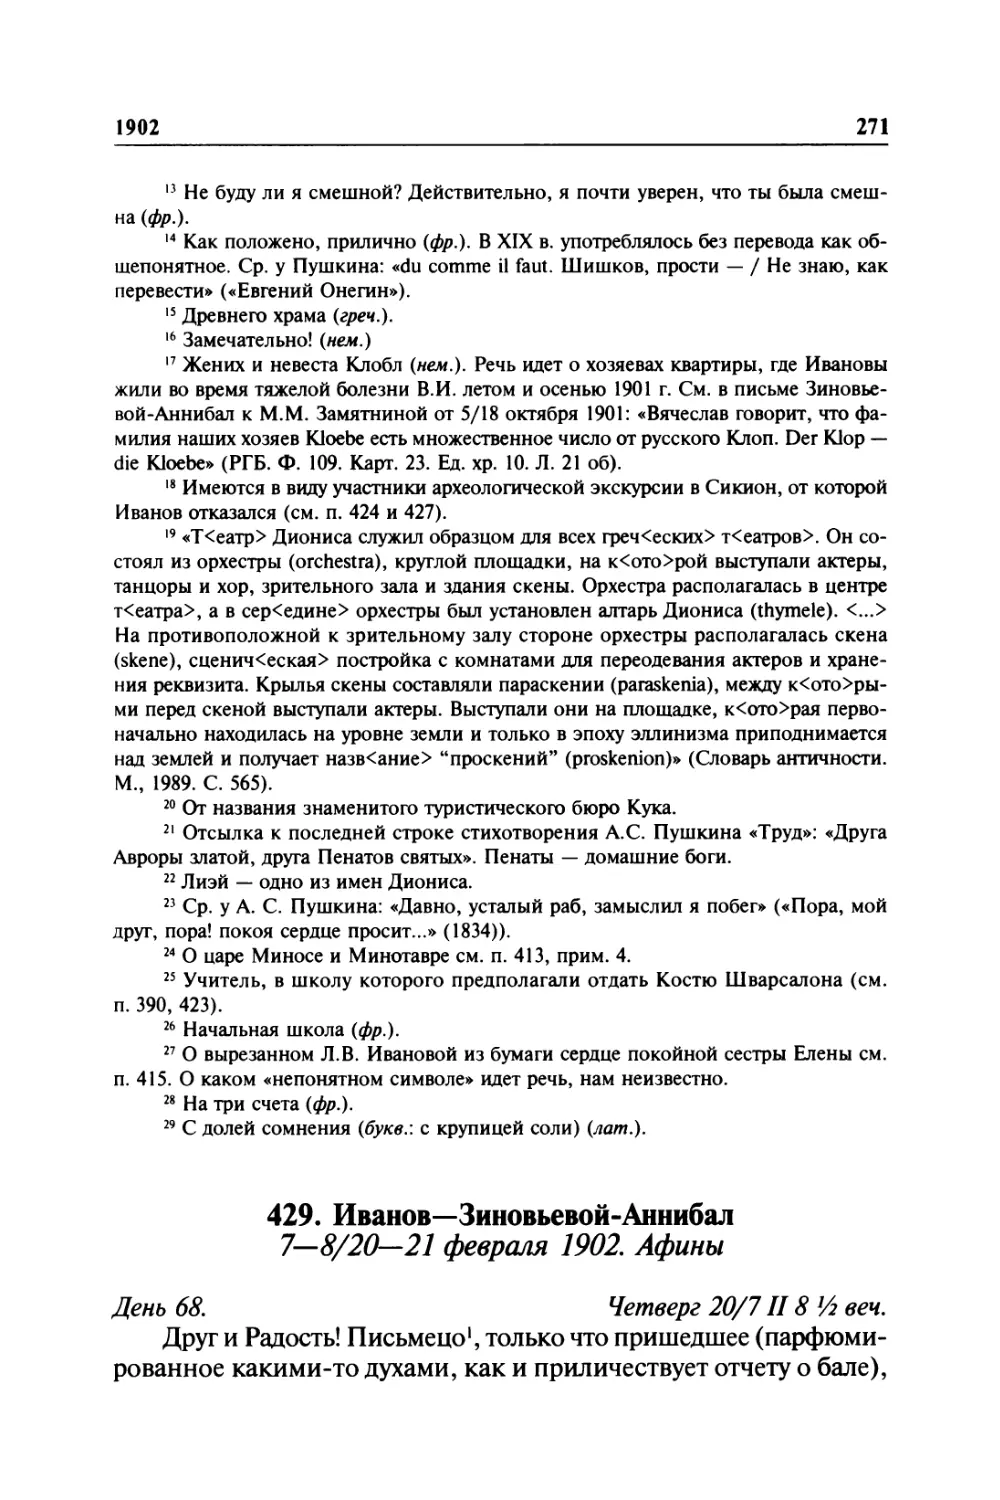 429. Иванов—Зиновьевой-Аннибал. 7—8/20—21 февраля 1902. Афины